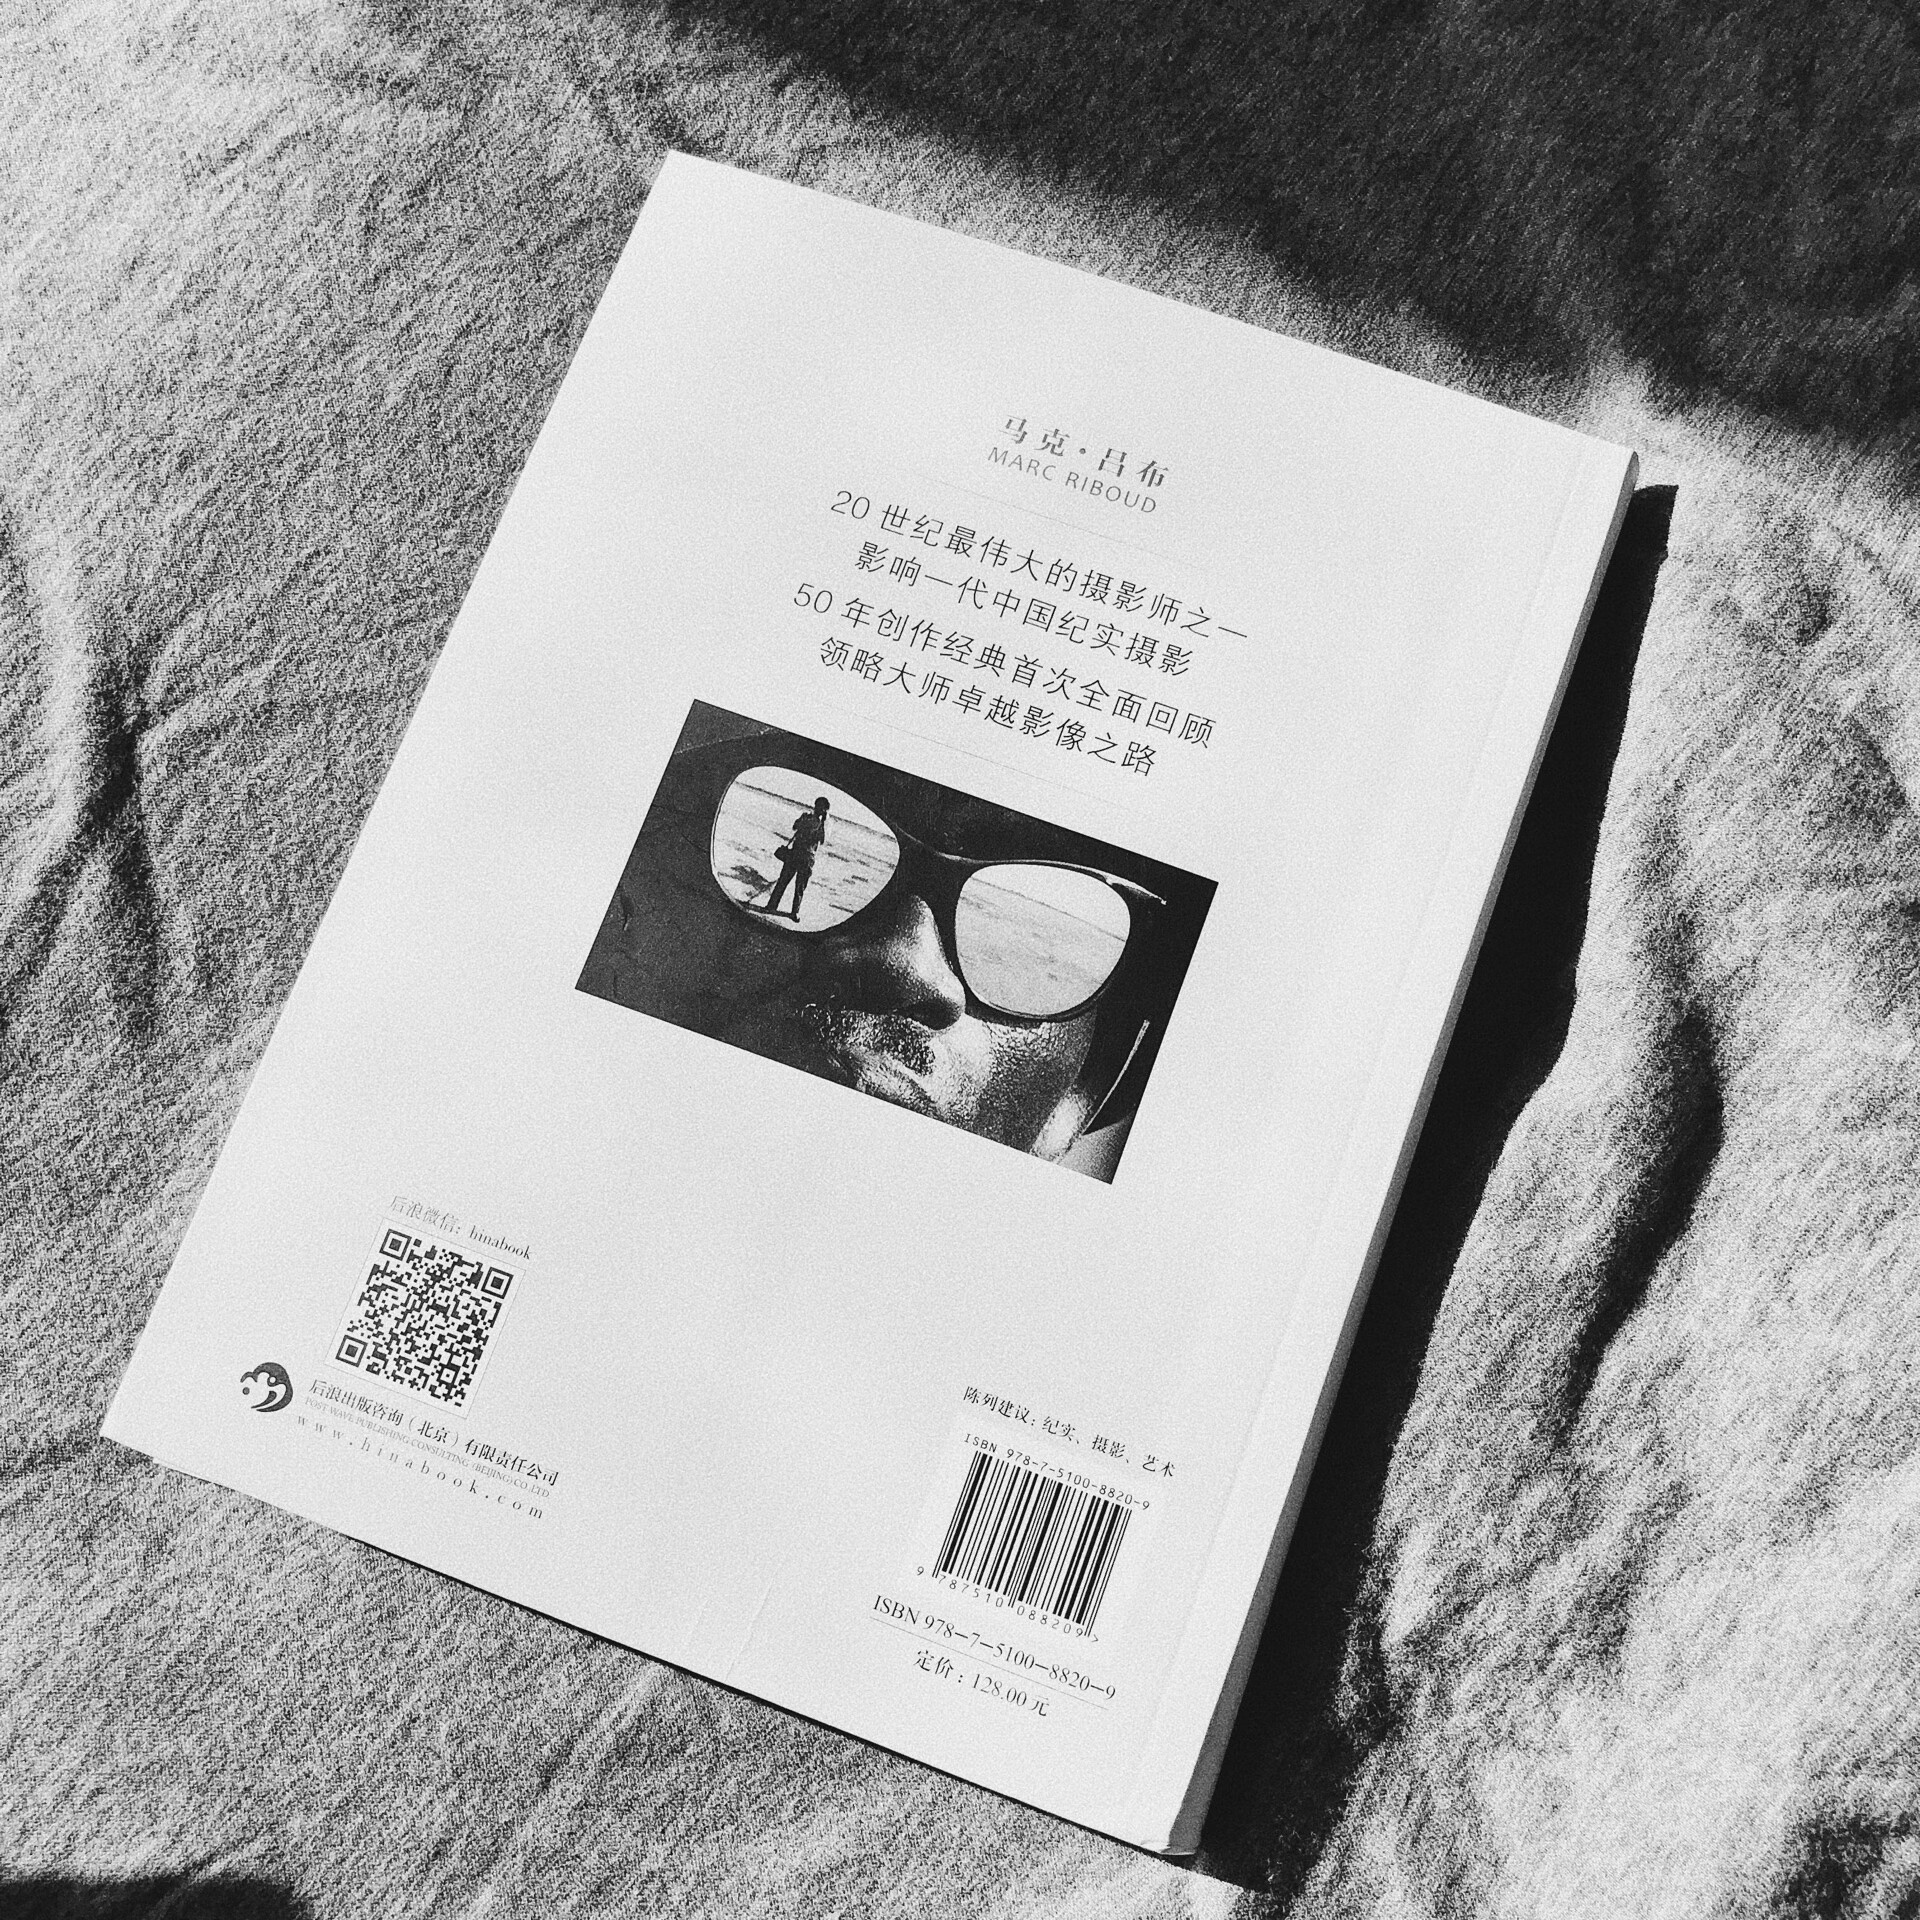 马格南摄影大师 马克吕布作品到访中国20余次。影响一代中国纪实摄影50年经典作品全面回顾 欣赏学**师印刷较为清晰 无文字 纯图片影集 感受照片的力量活动图书满199-100还比较合适，屯了一批书。